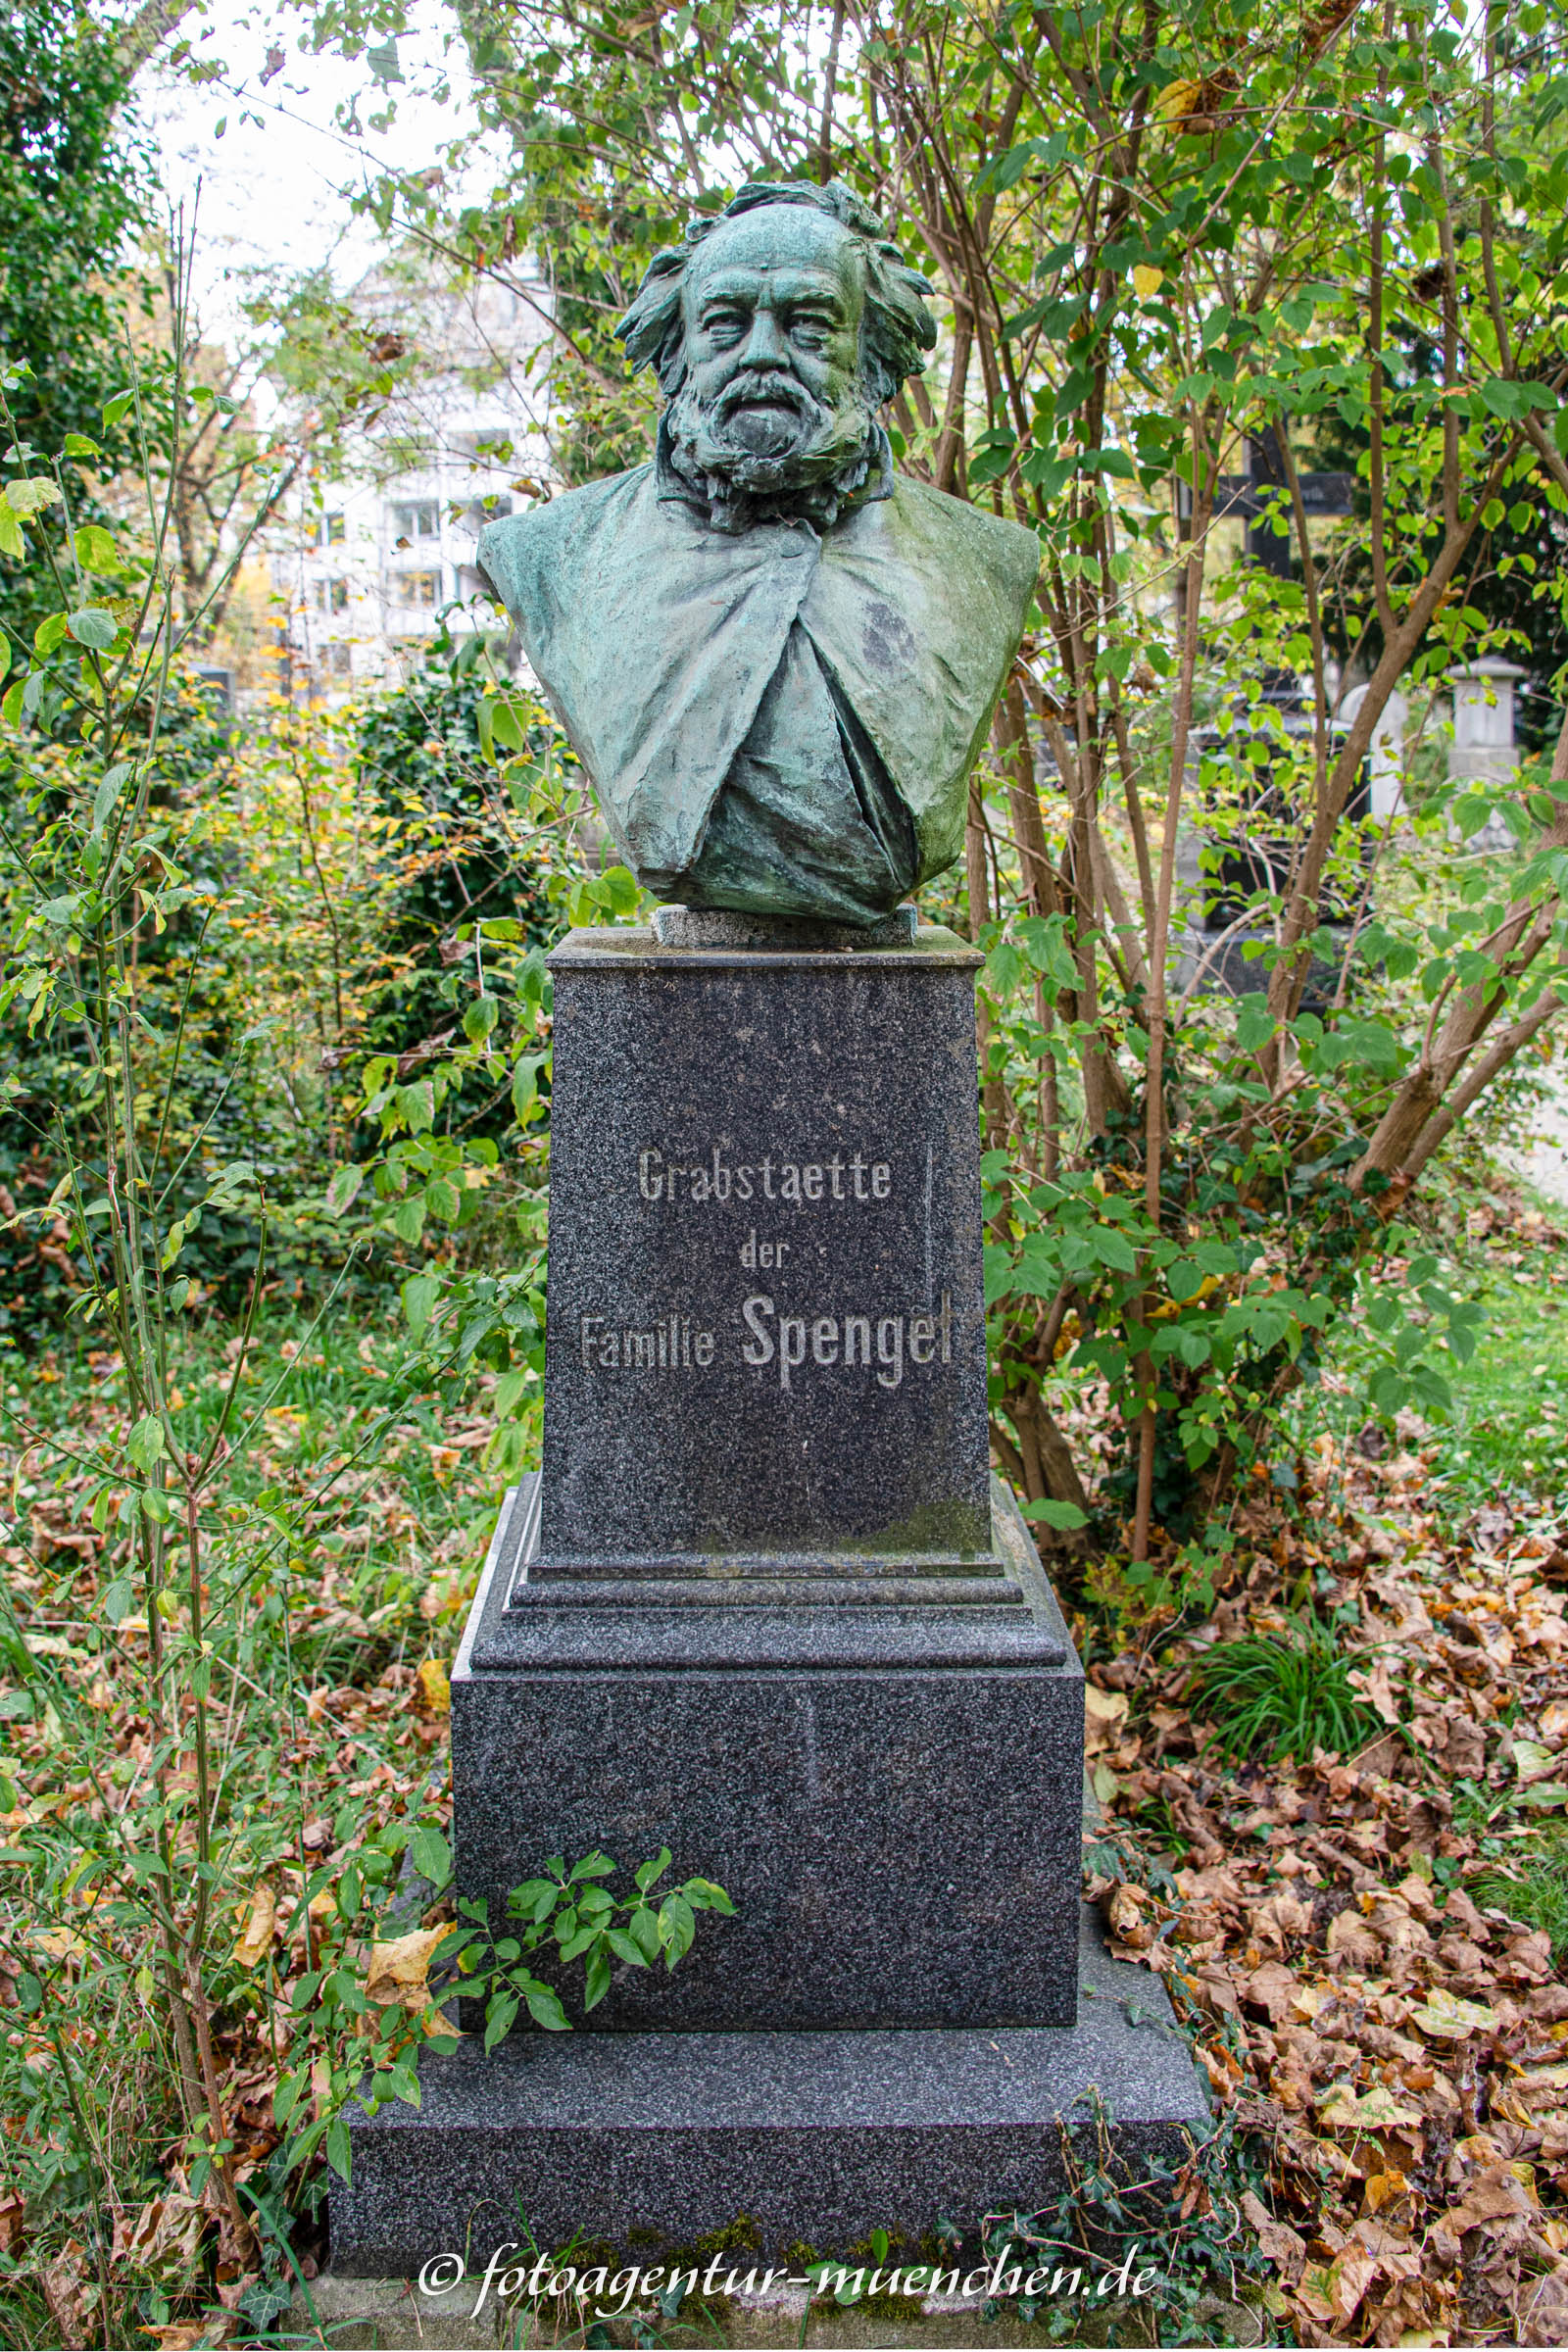 Leonhard von Spengel